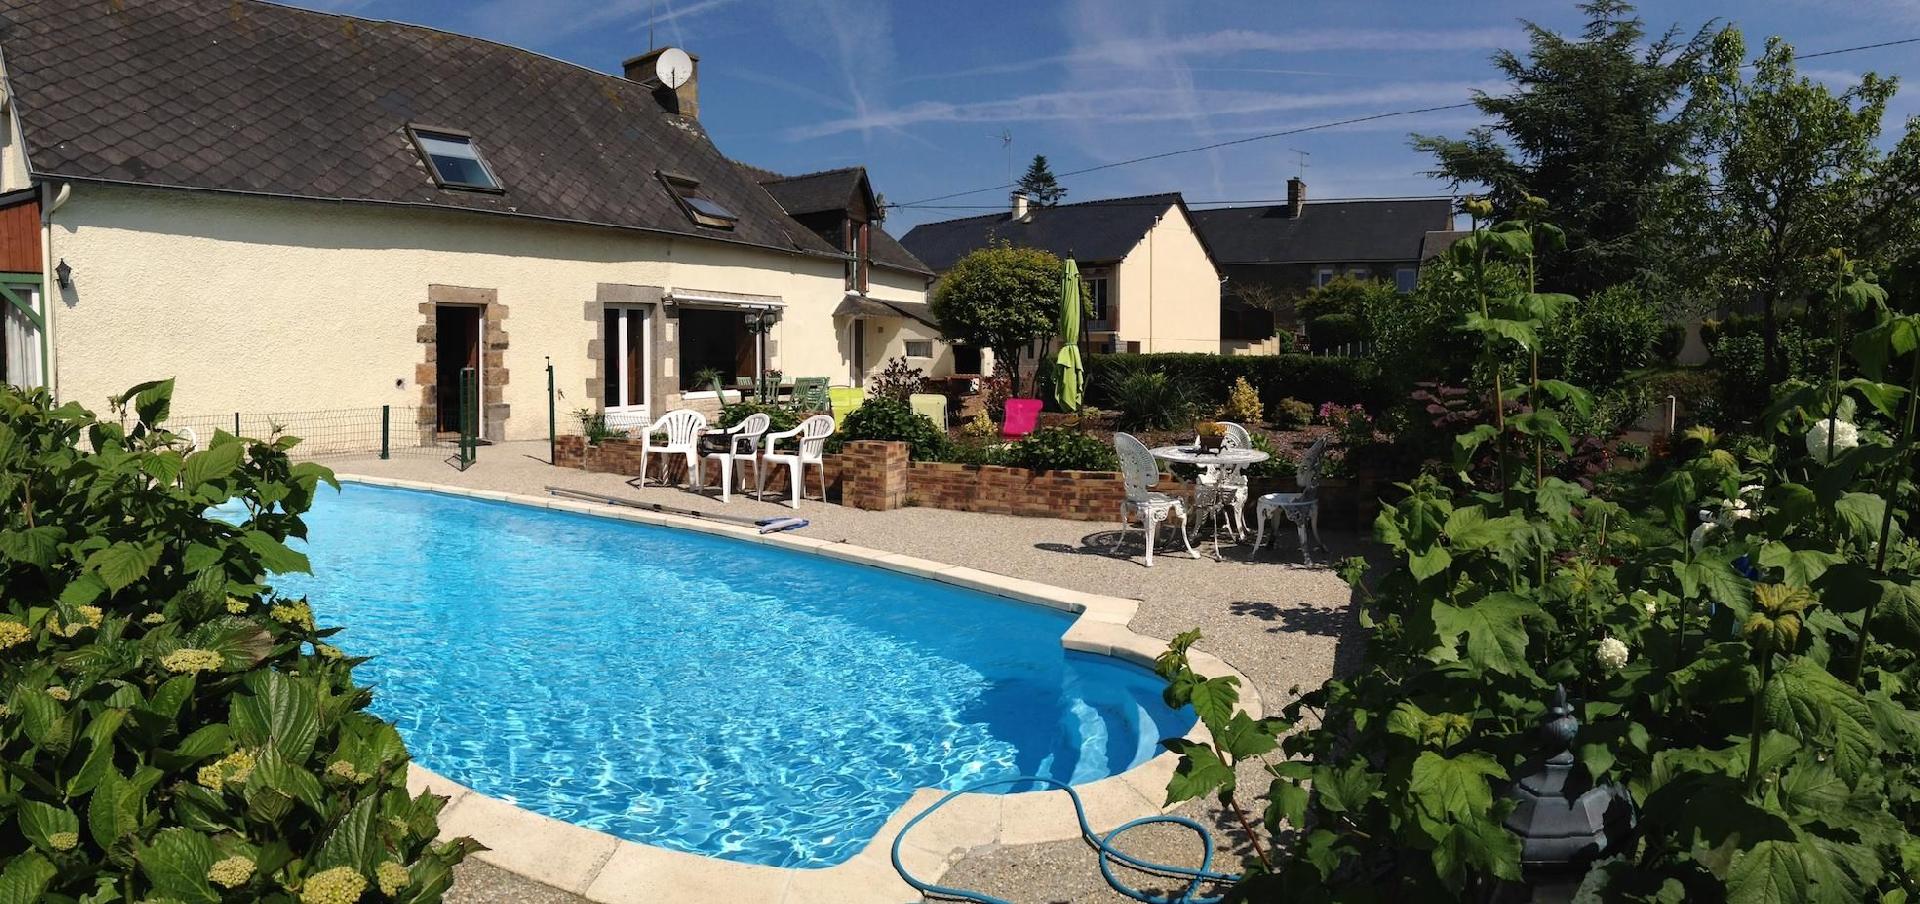 Ferienhaus mit Garten und eigenem Pool, in der N&a Ferienhaus  La Croix Valmer